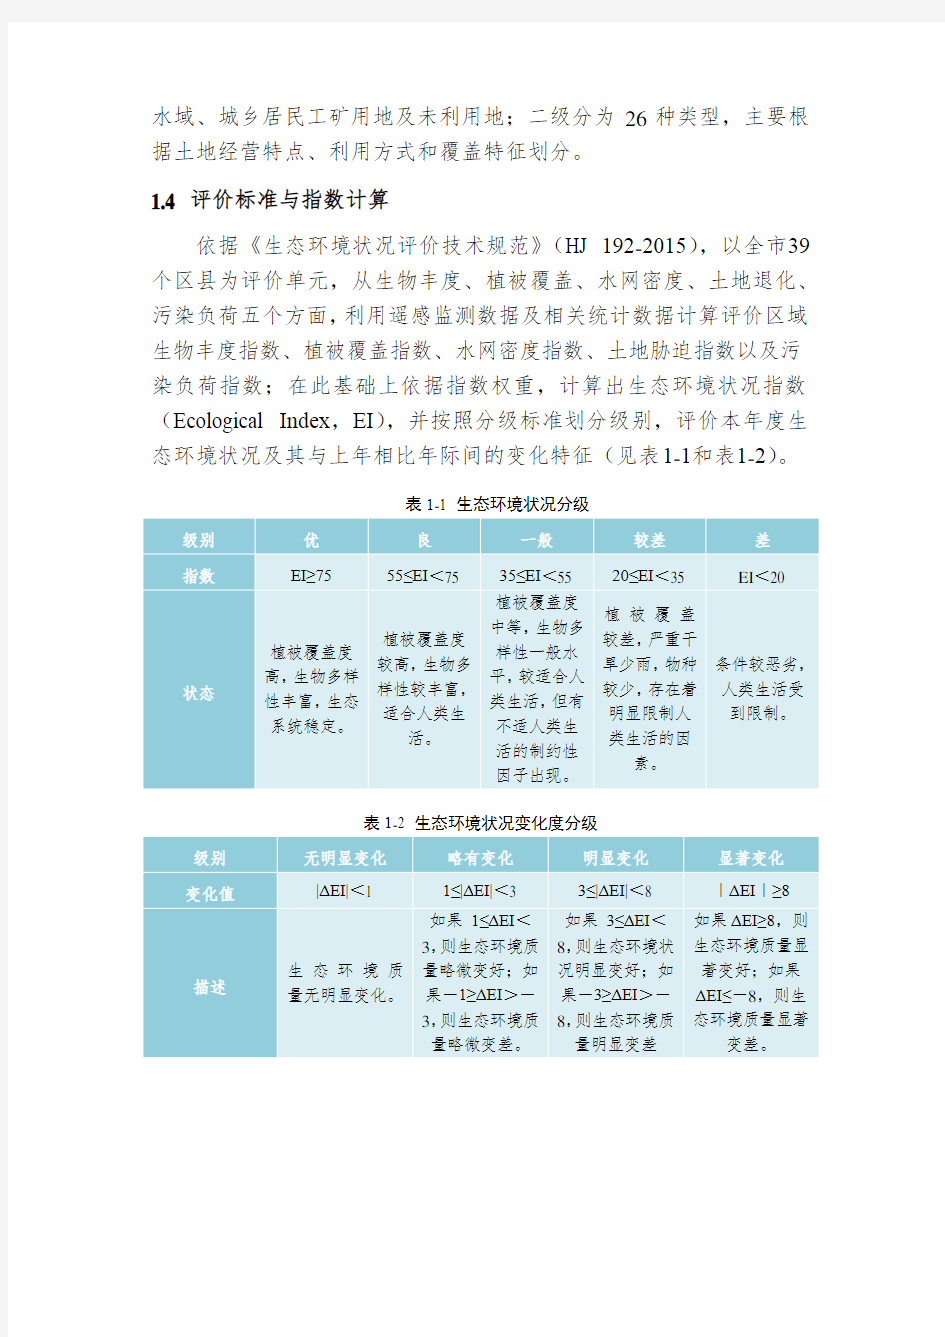 2016年重庆市生态环境状况(EI)评价